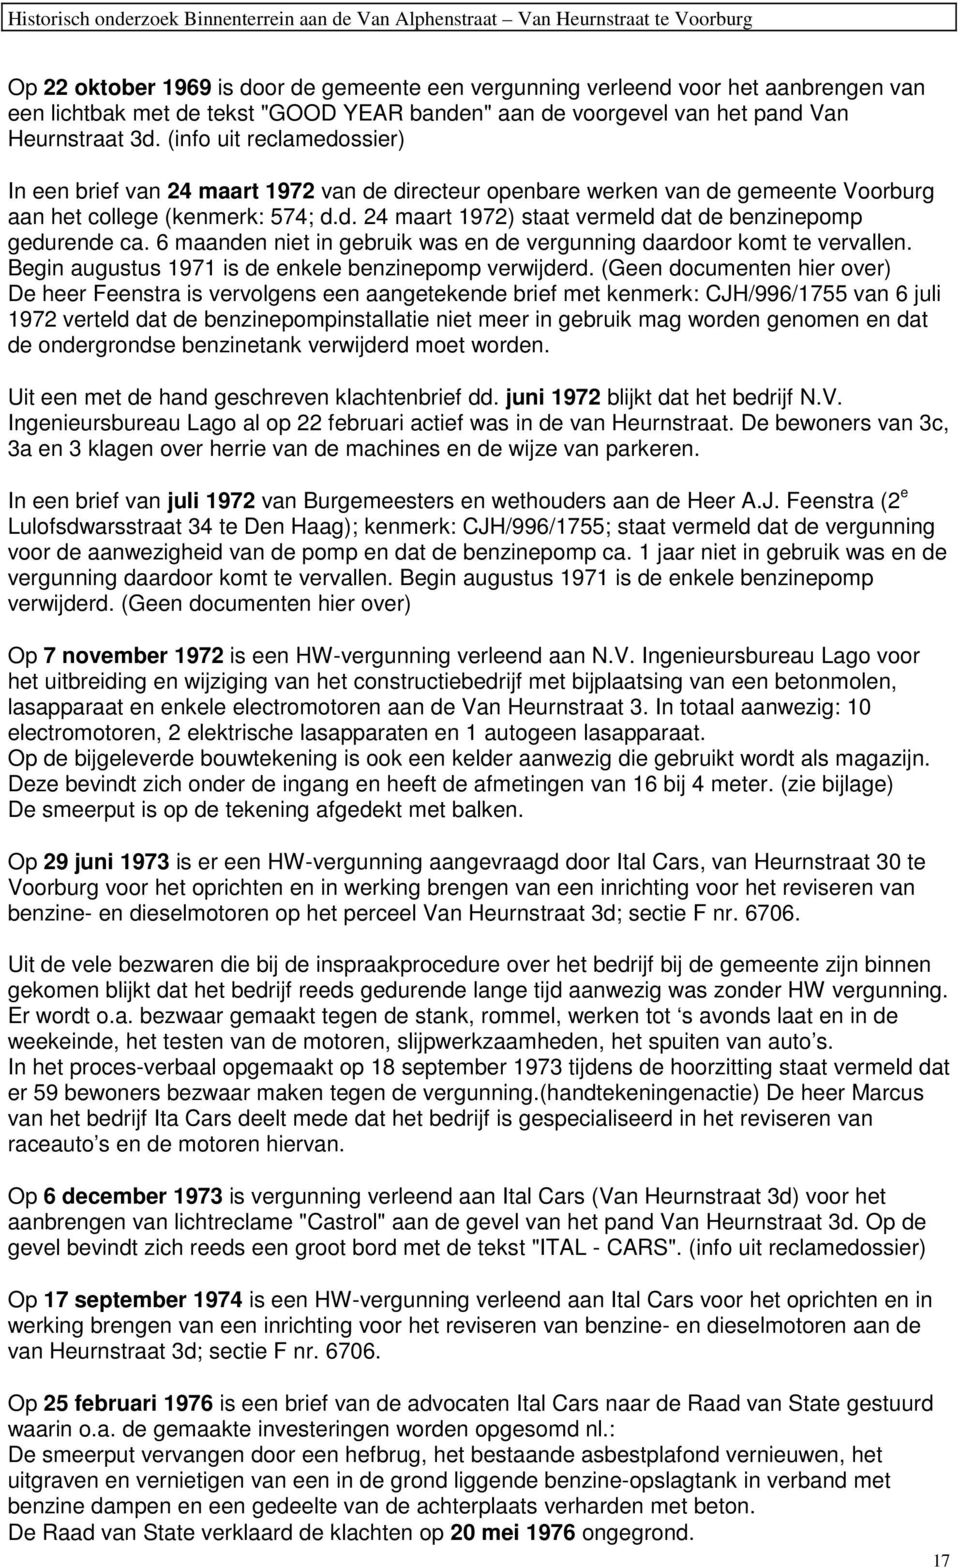 (info uit reclamedossier) In een brief van 24 maart 1972 van de directeur openbare werken van de gemeente Voorburg aan het college (kenmerk: 574; d.d. 24 maart 1972) staat vermeld dat de benzinepomp gedurende ca.